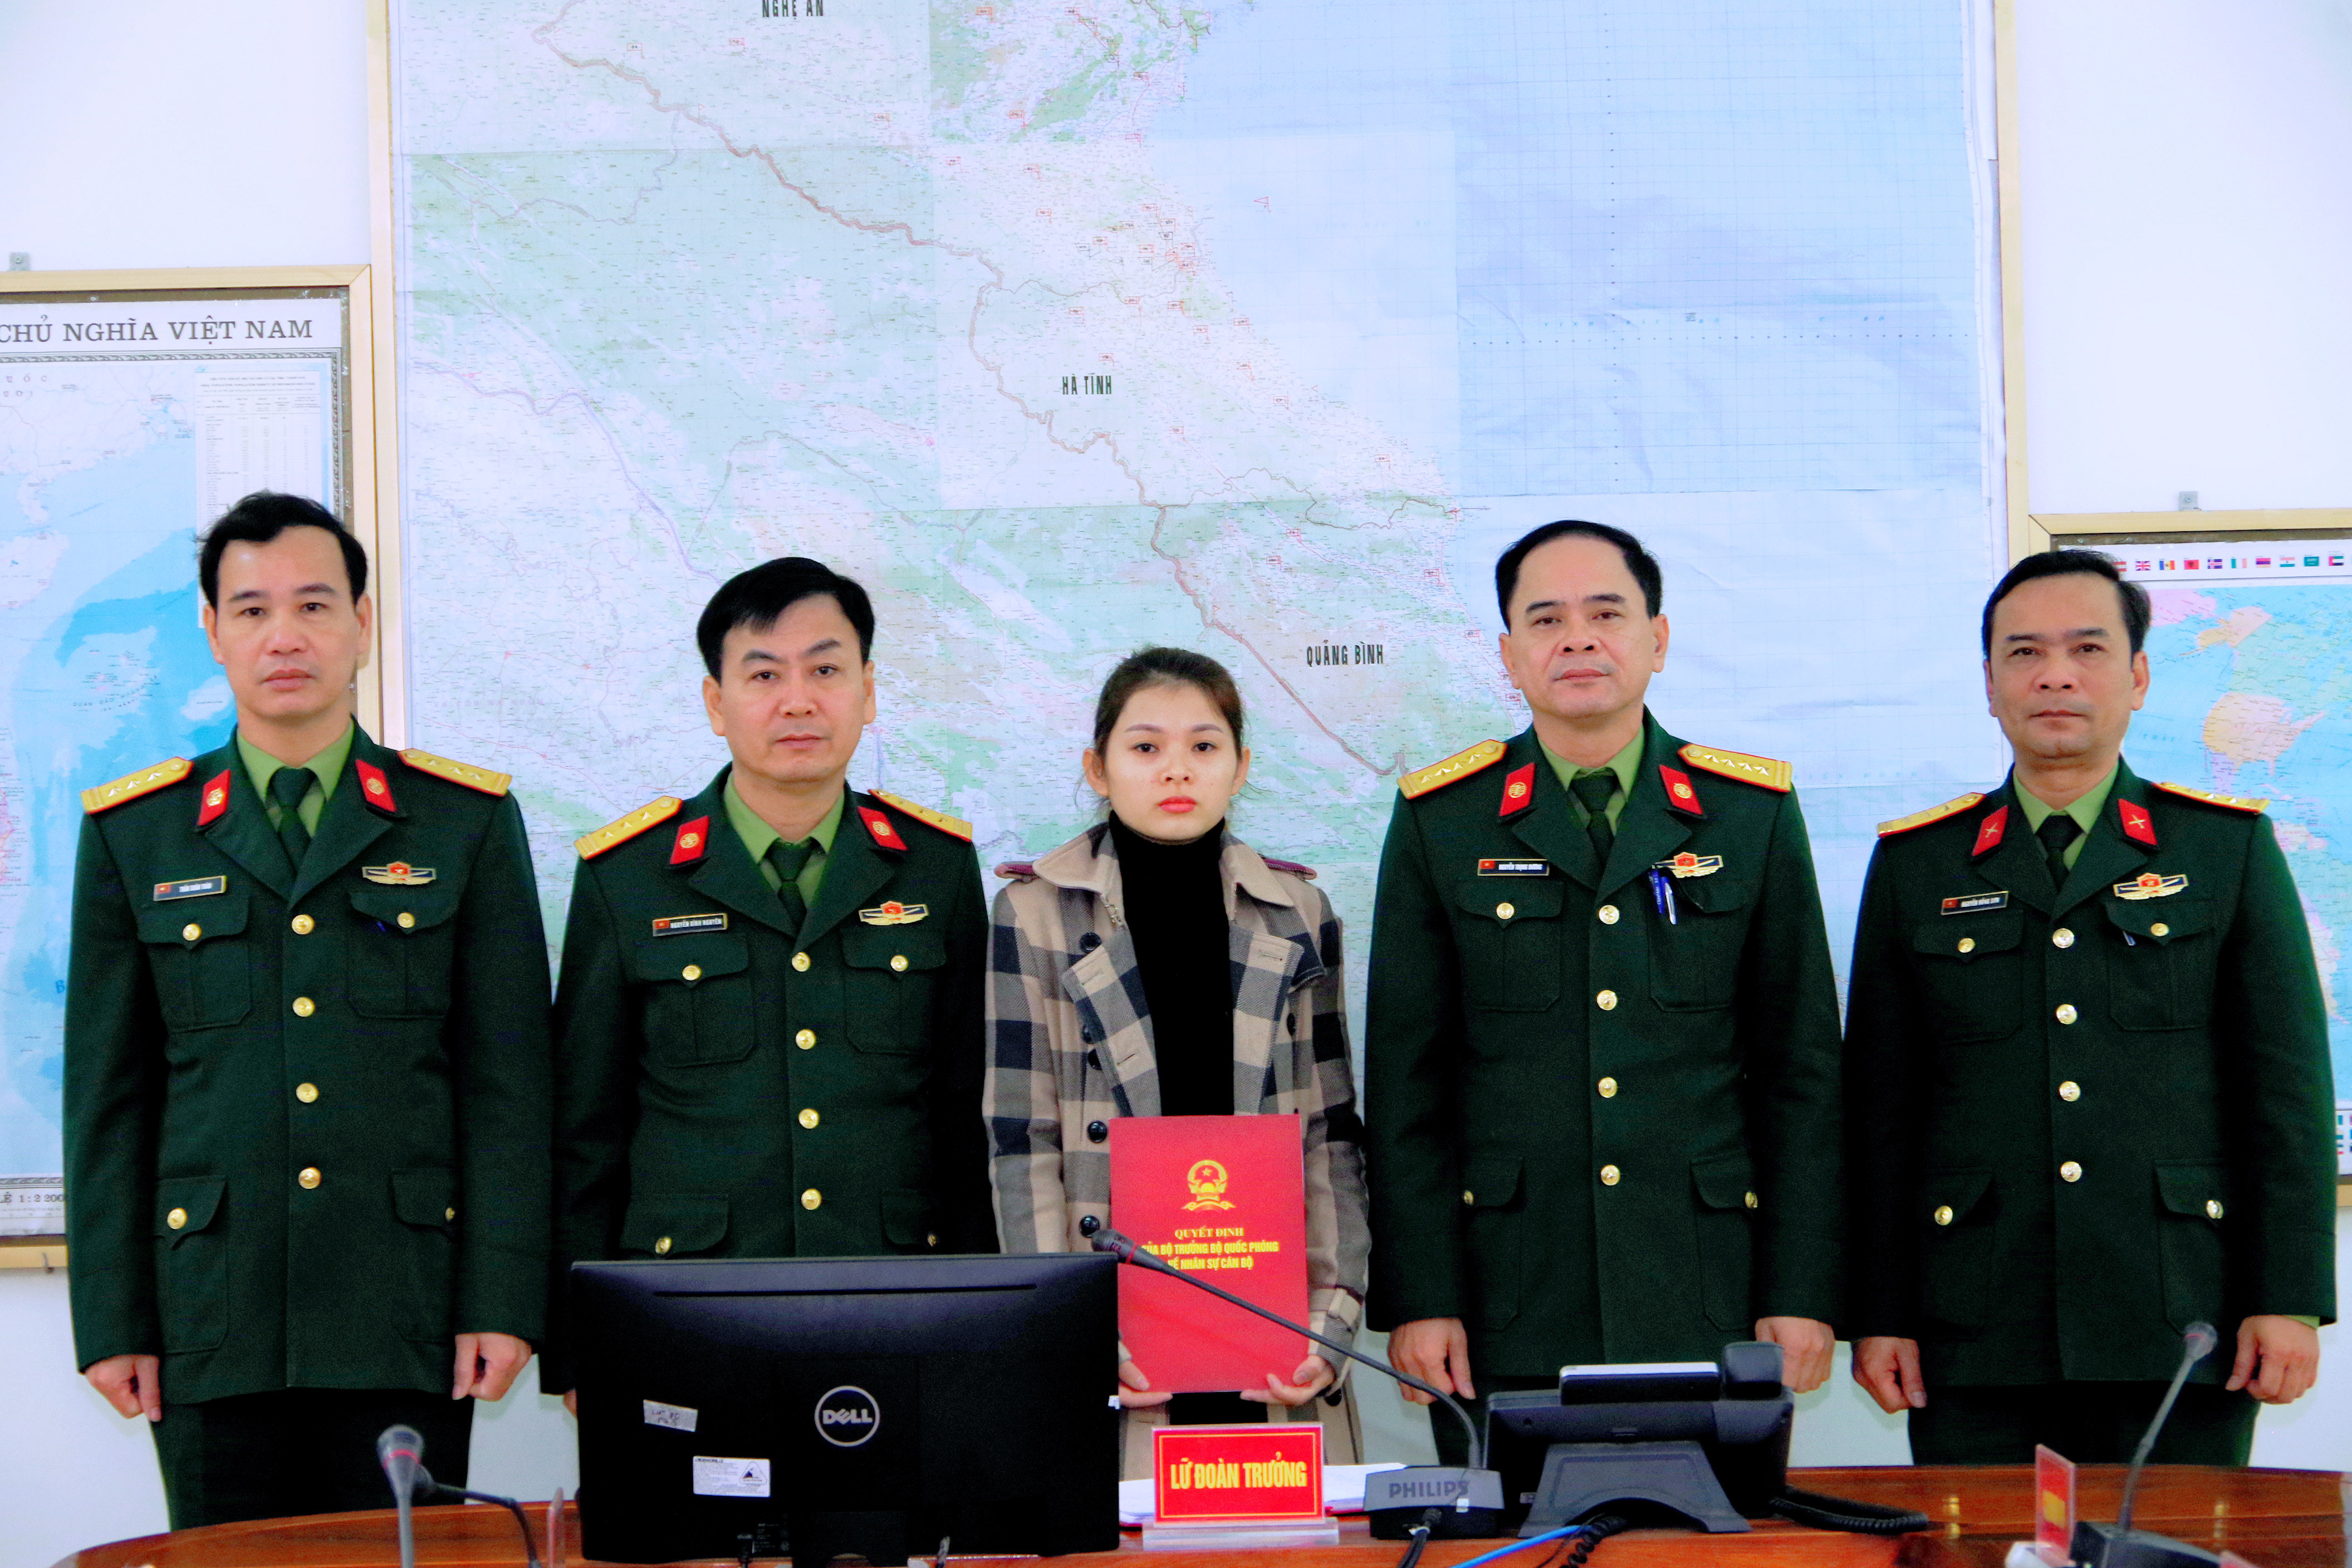 2.Chỉ huy Lữ đoàn trao quyết định tuyển dụng QNCN cho chị Nguyễn Thị Anh